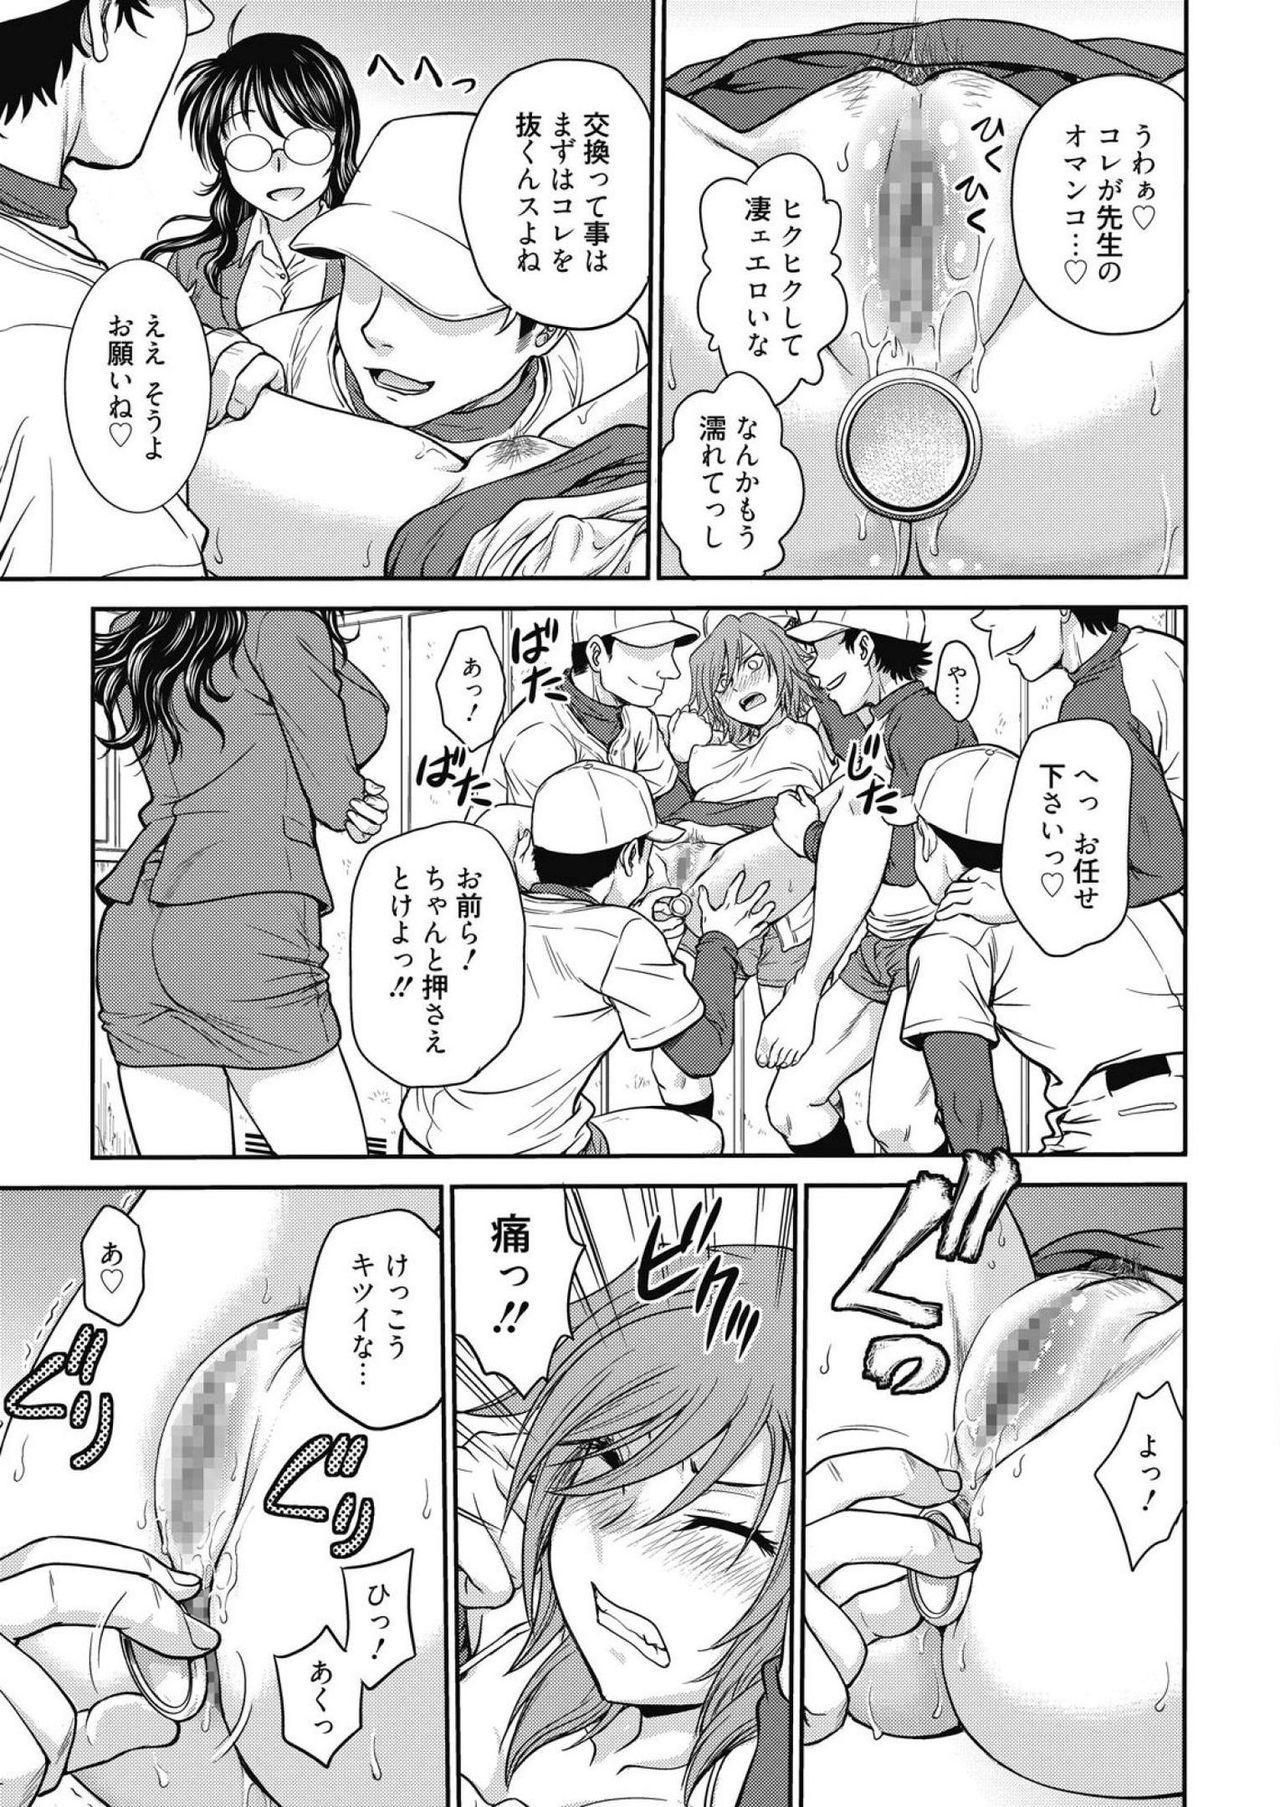 Nurse Web Manga Bangaichi Vol. 14 Gym - Page 7